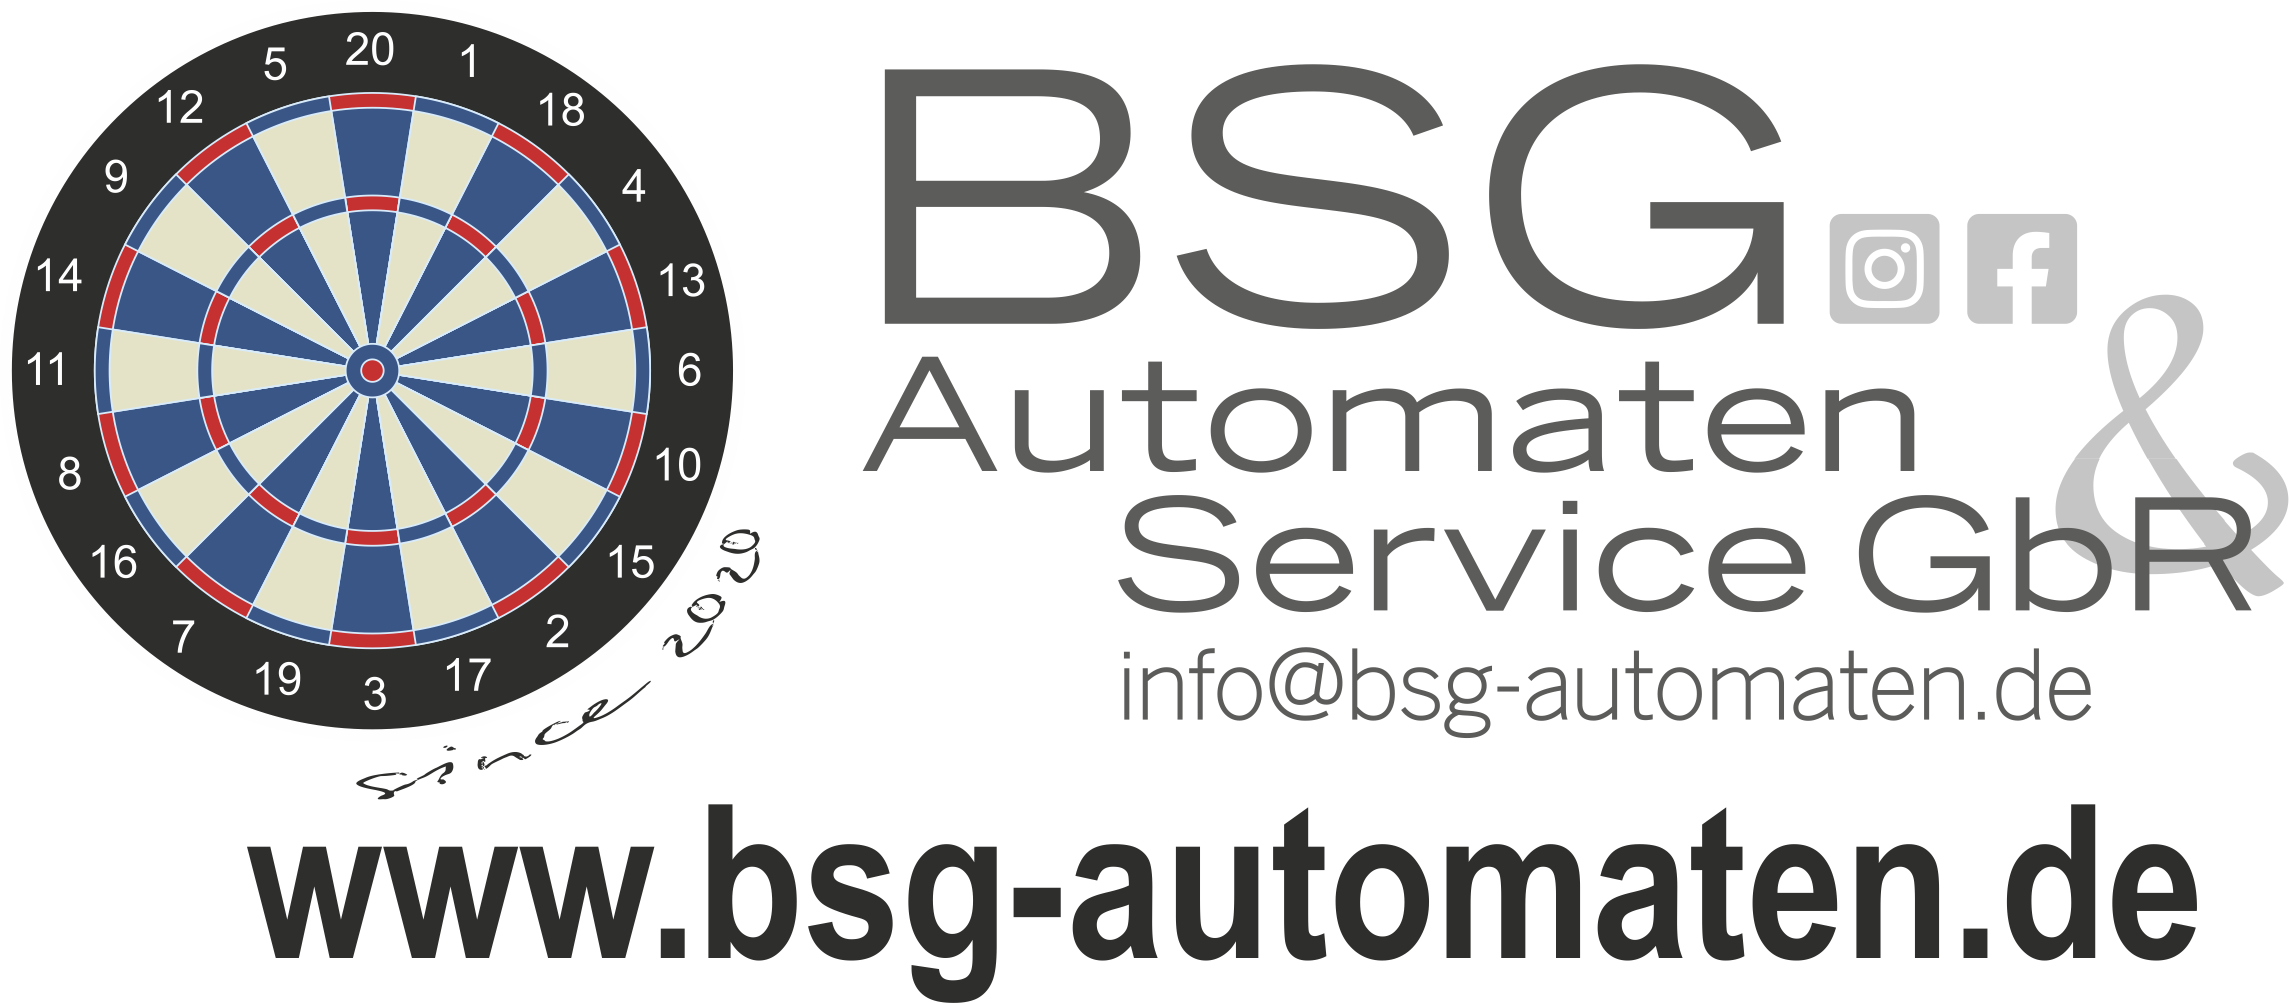 BSG Logo mit WWW 2020 12 20